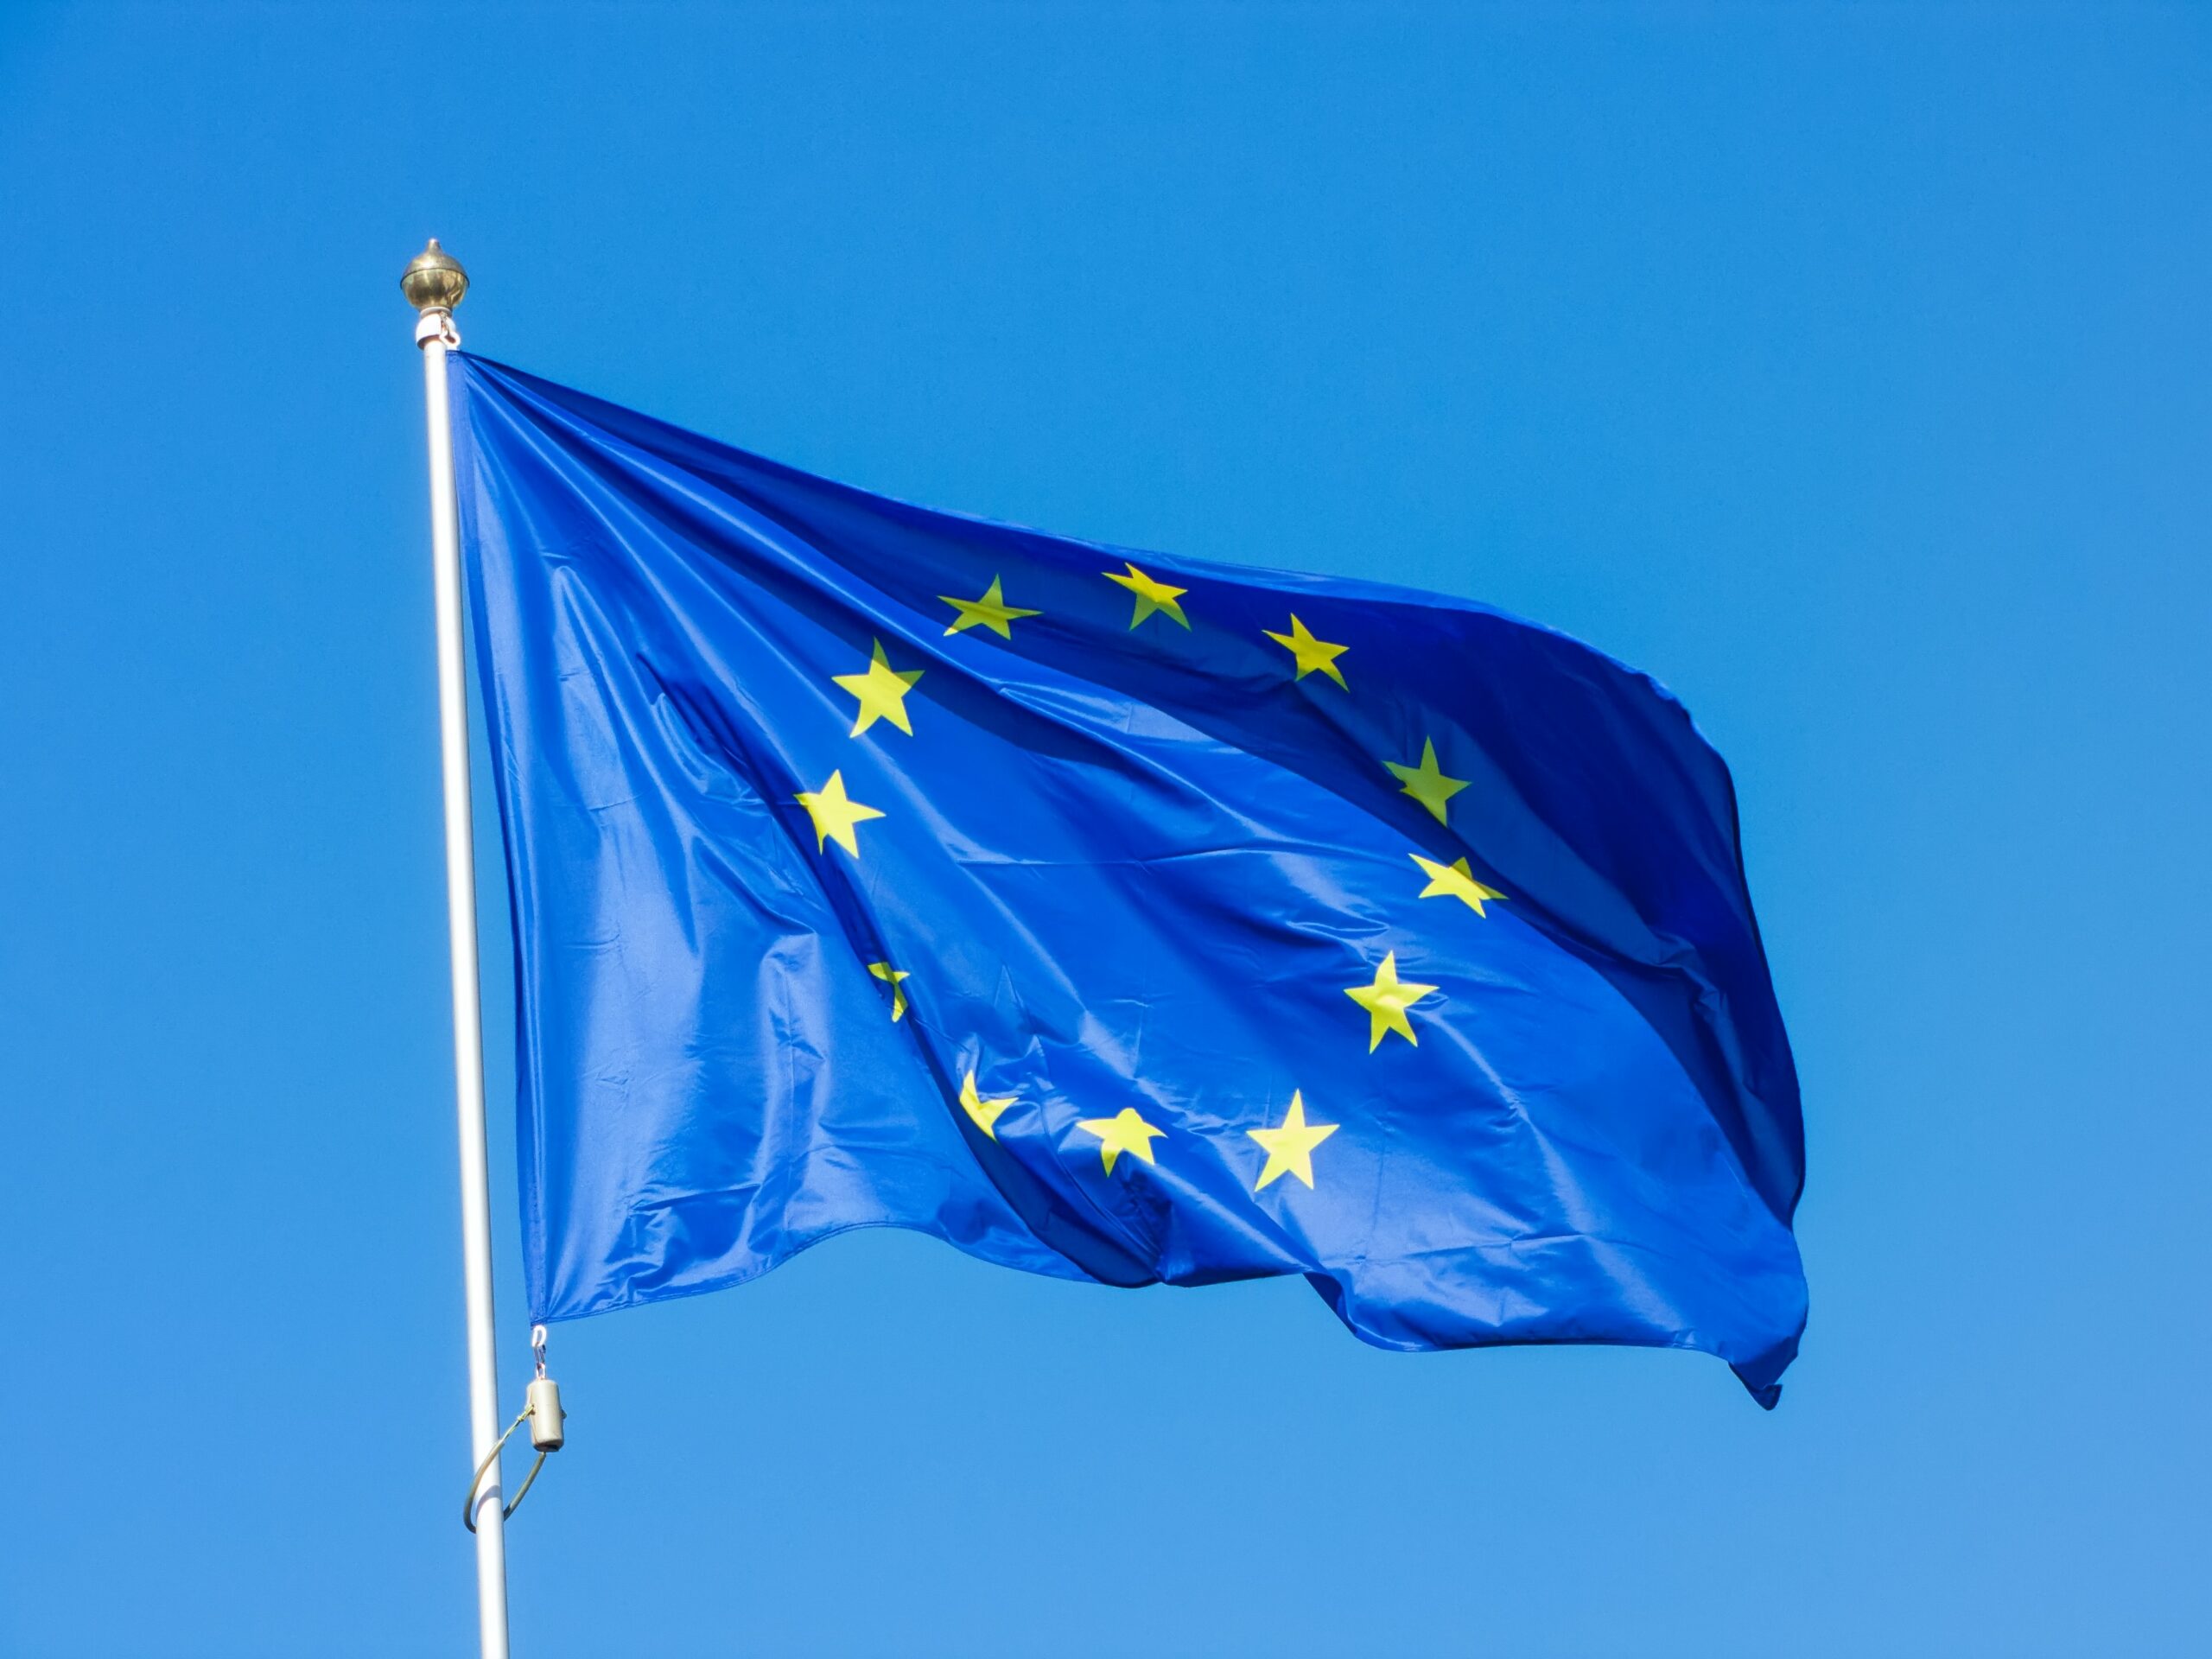 Dekoratives Symbolfoto zeigt eine euroäische Flagge im Wind vor blauem Himmel.